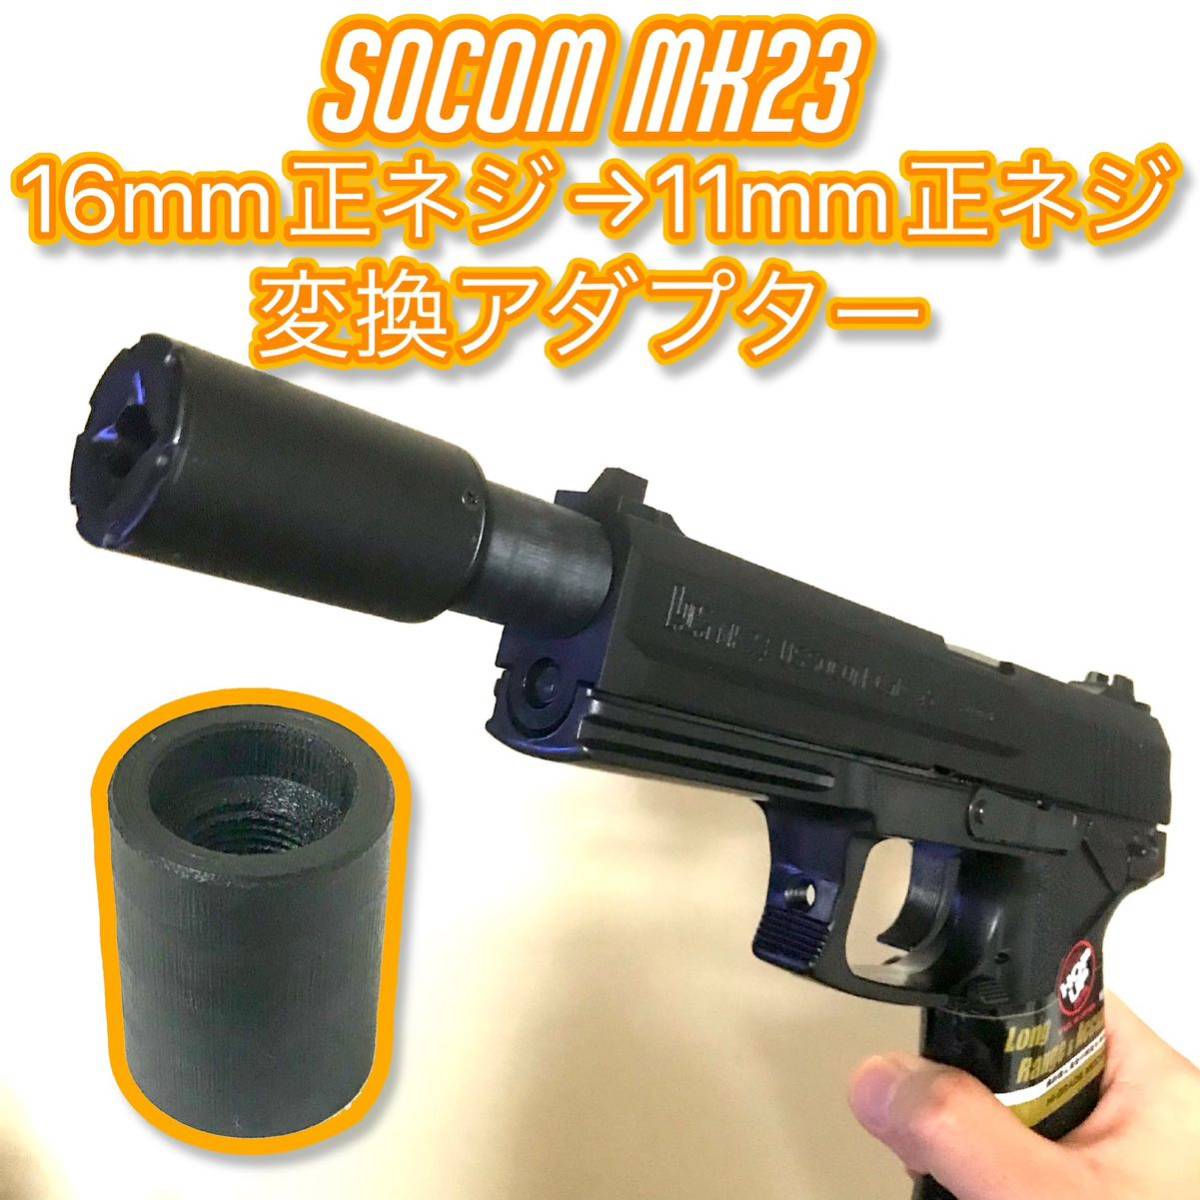 16mm正ネジ→11mm正ネジ変換アダプター SOCOM MK23の画像1